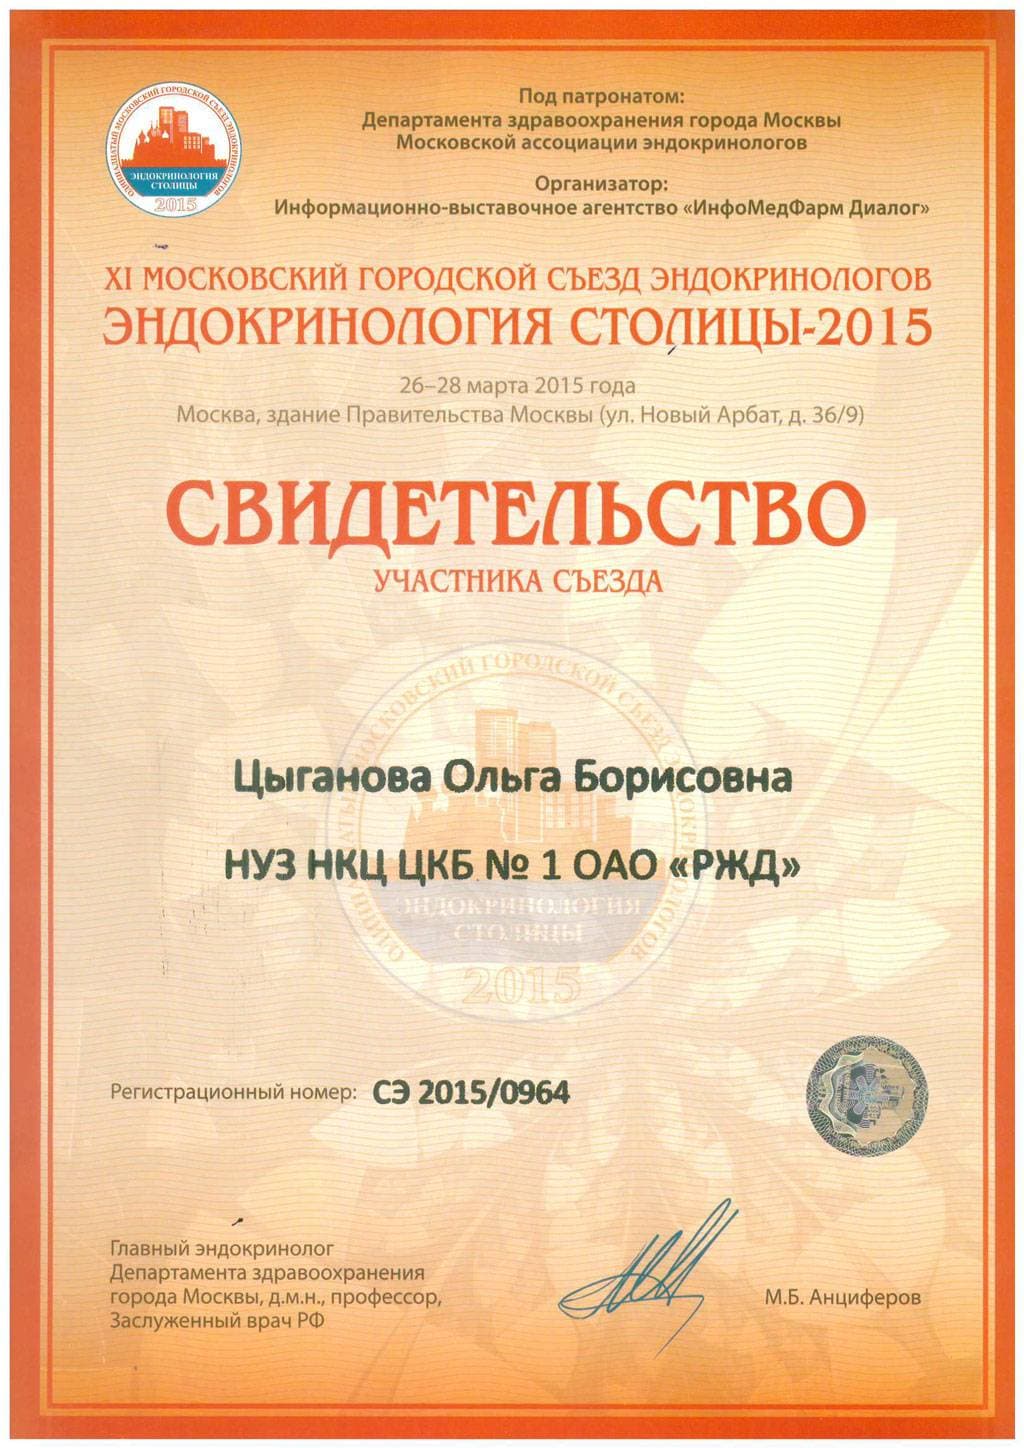 Московский городской съезд эндокринологов эндокринология столицы 2015